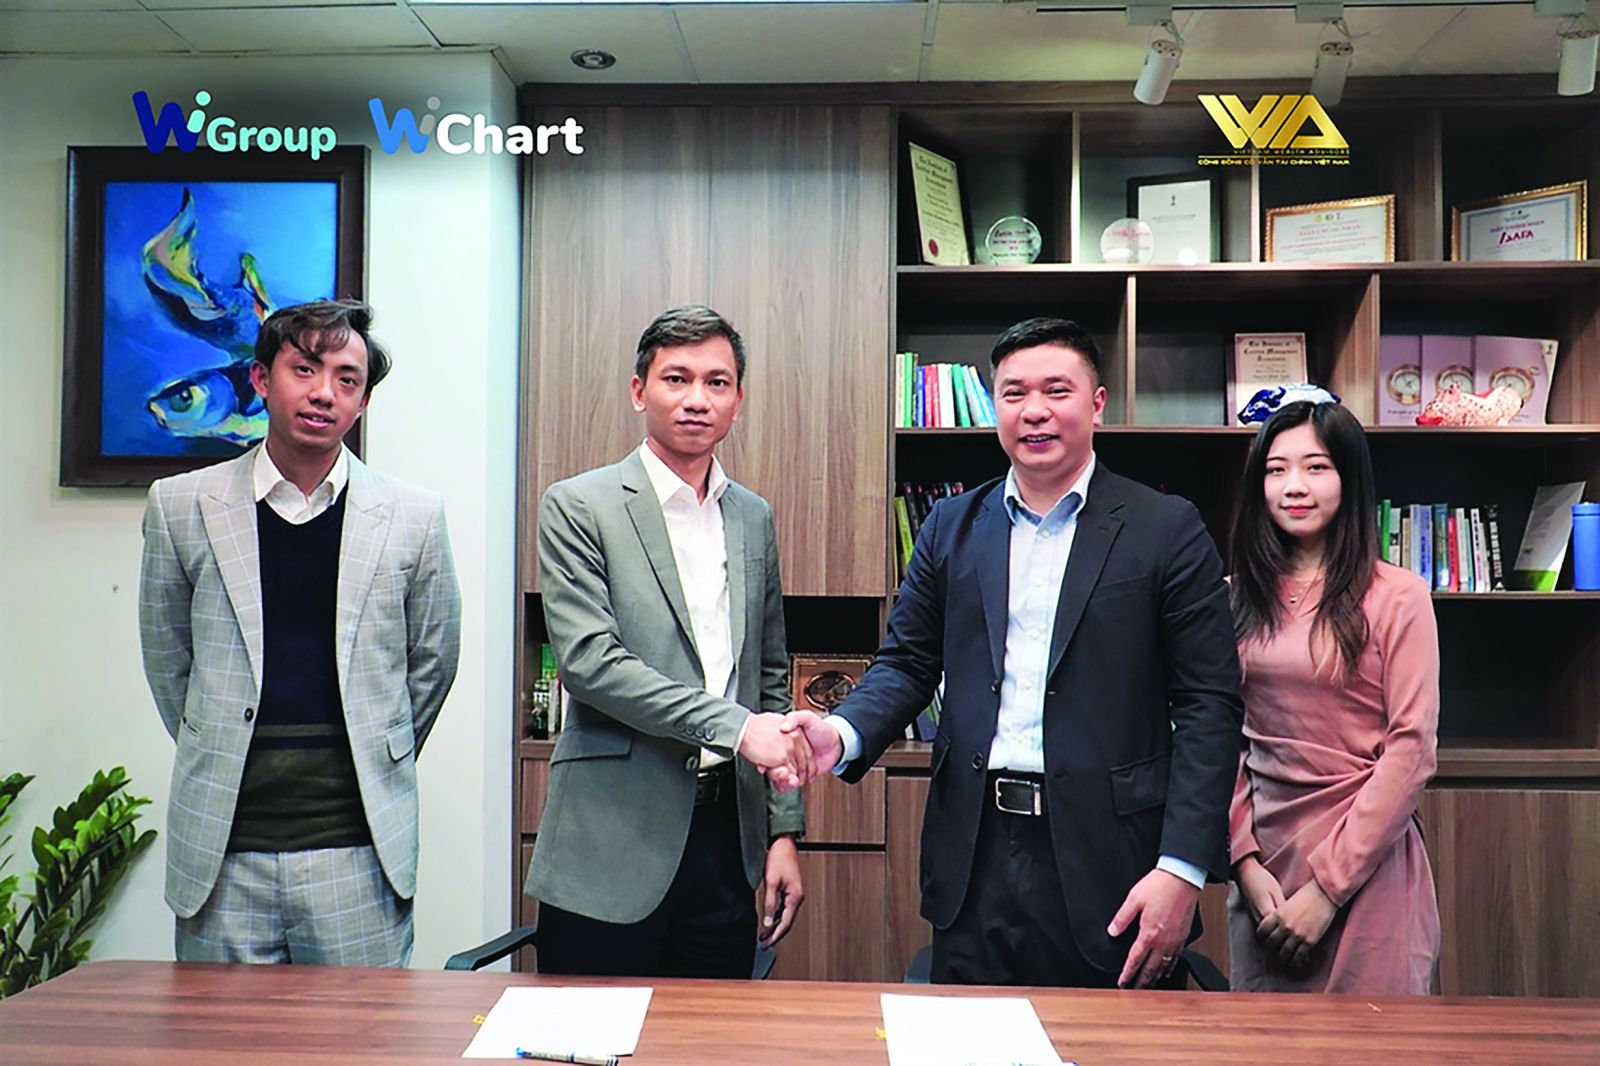  Cộng đồng Cố vấn tài chính Việt Nam (VWA) và Công ty Cổ phần WiGroup ký kết hợp tác.